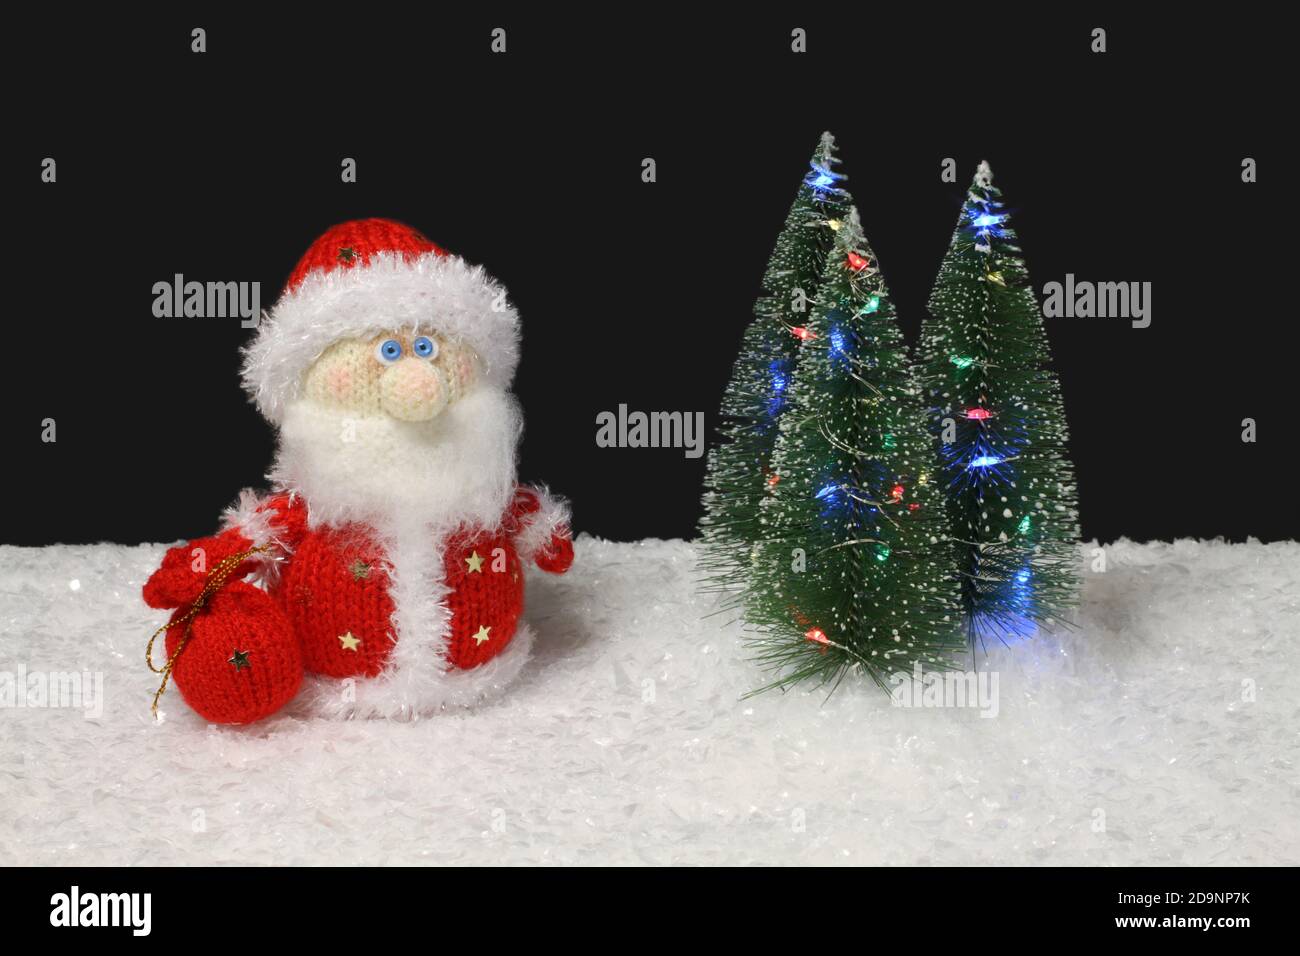 Il giocattolo in lana maglia Babbo Natale si trova accanto al giocattolo verde alberi di Natale con luci sulla neve bianca artificiale su sfondo nero. Primo piano Foto Stock